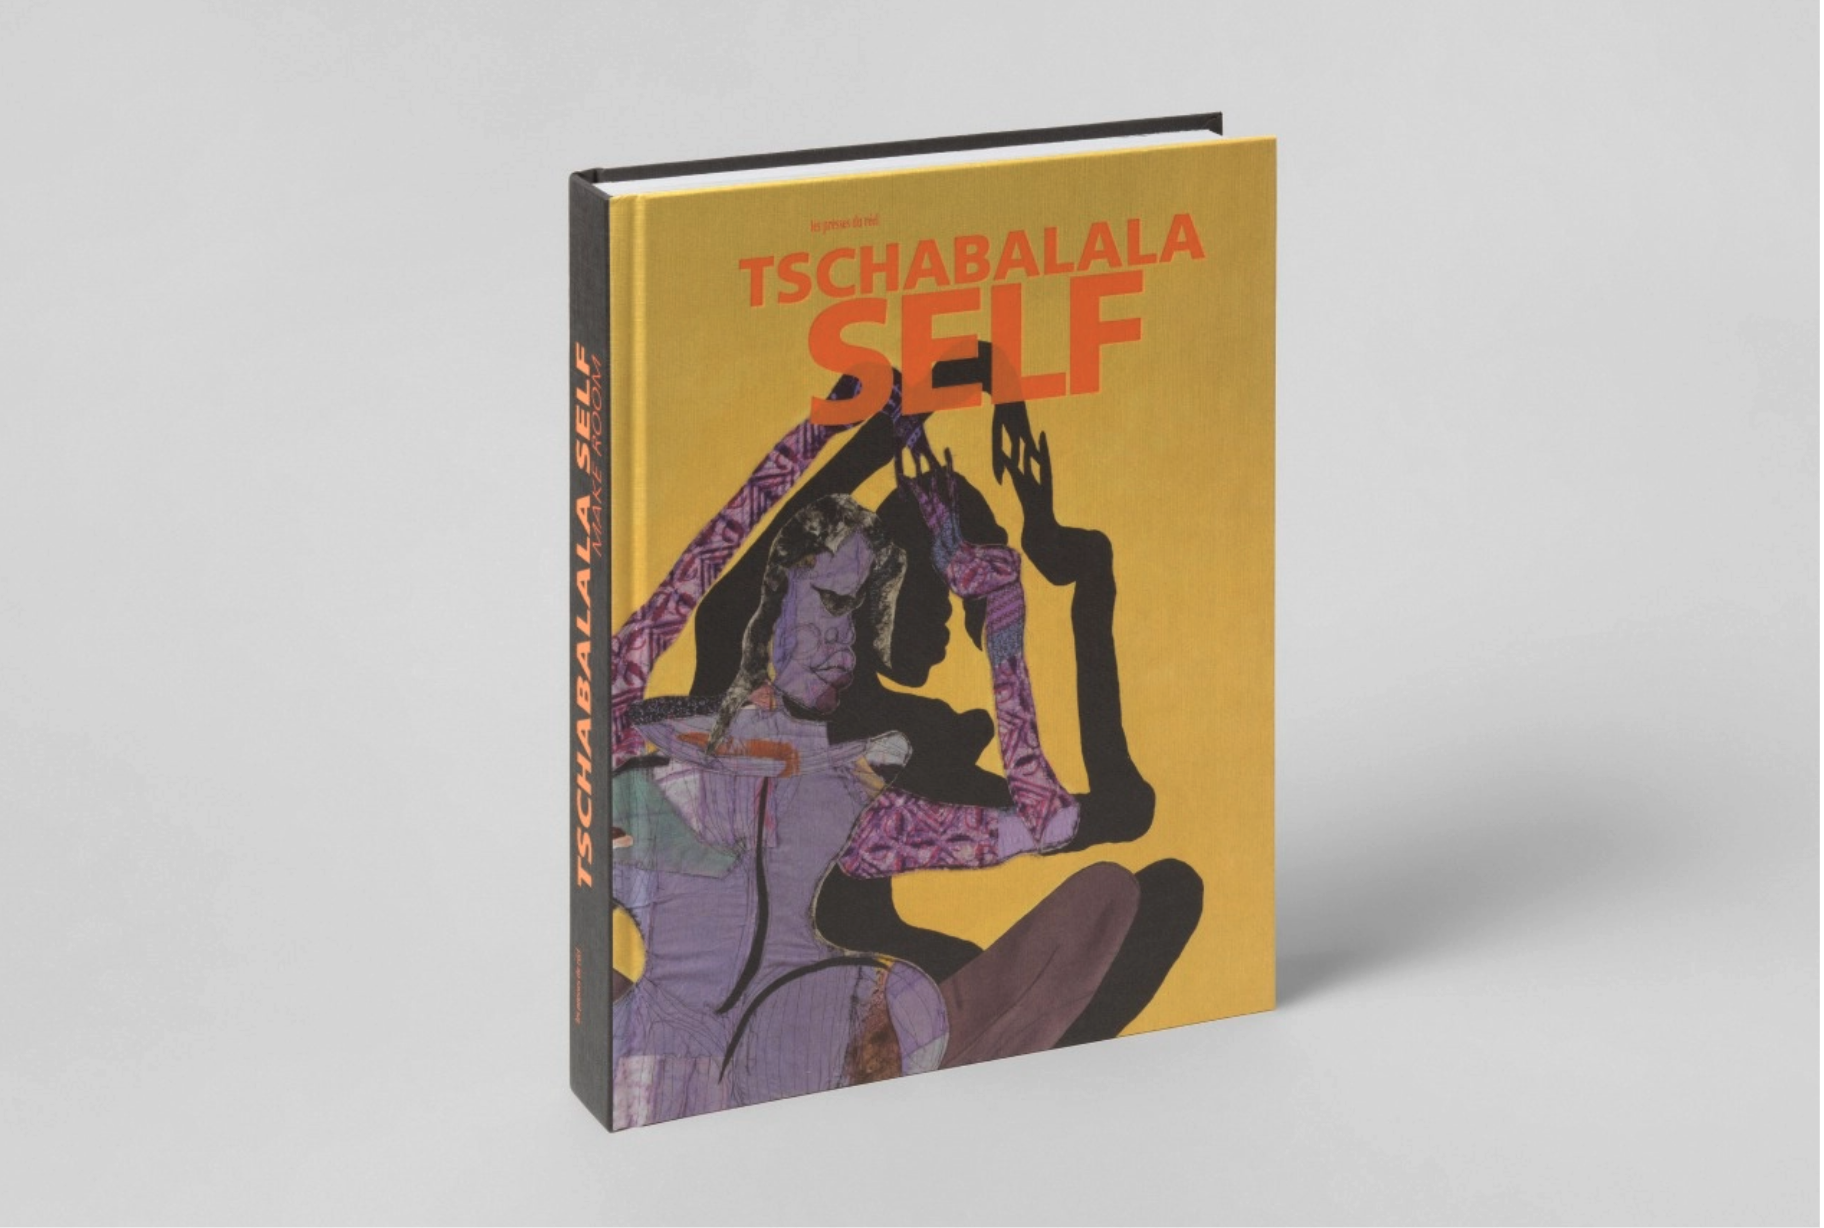 Tschabalala Book Self 2